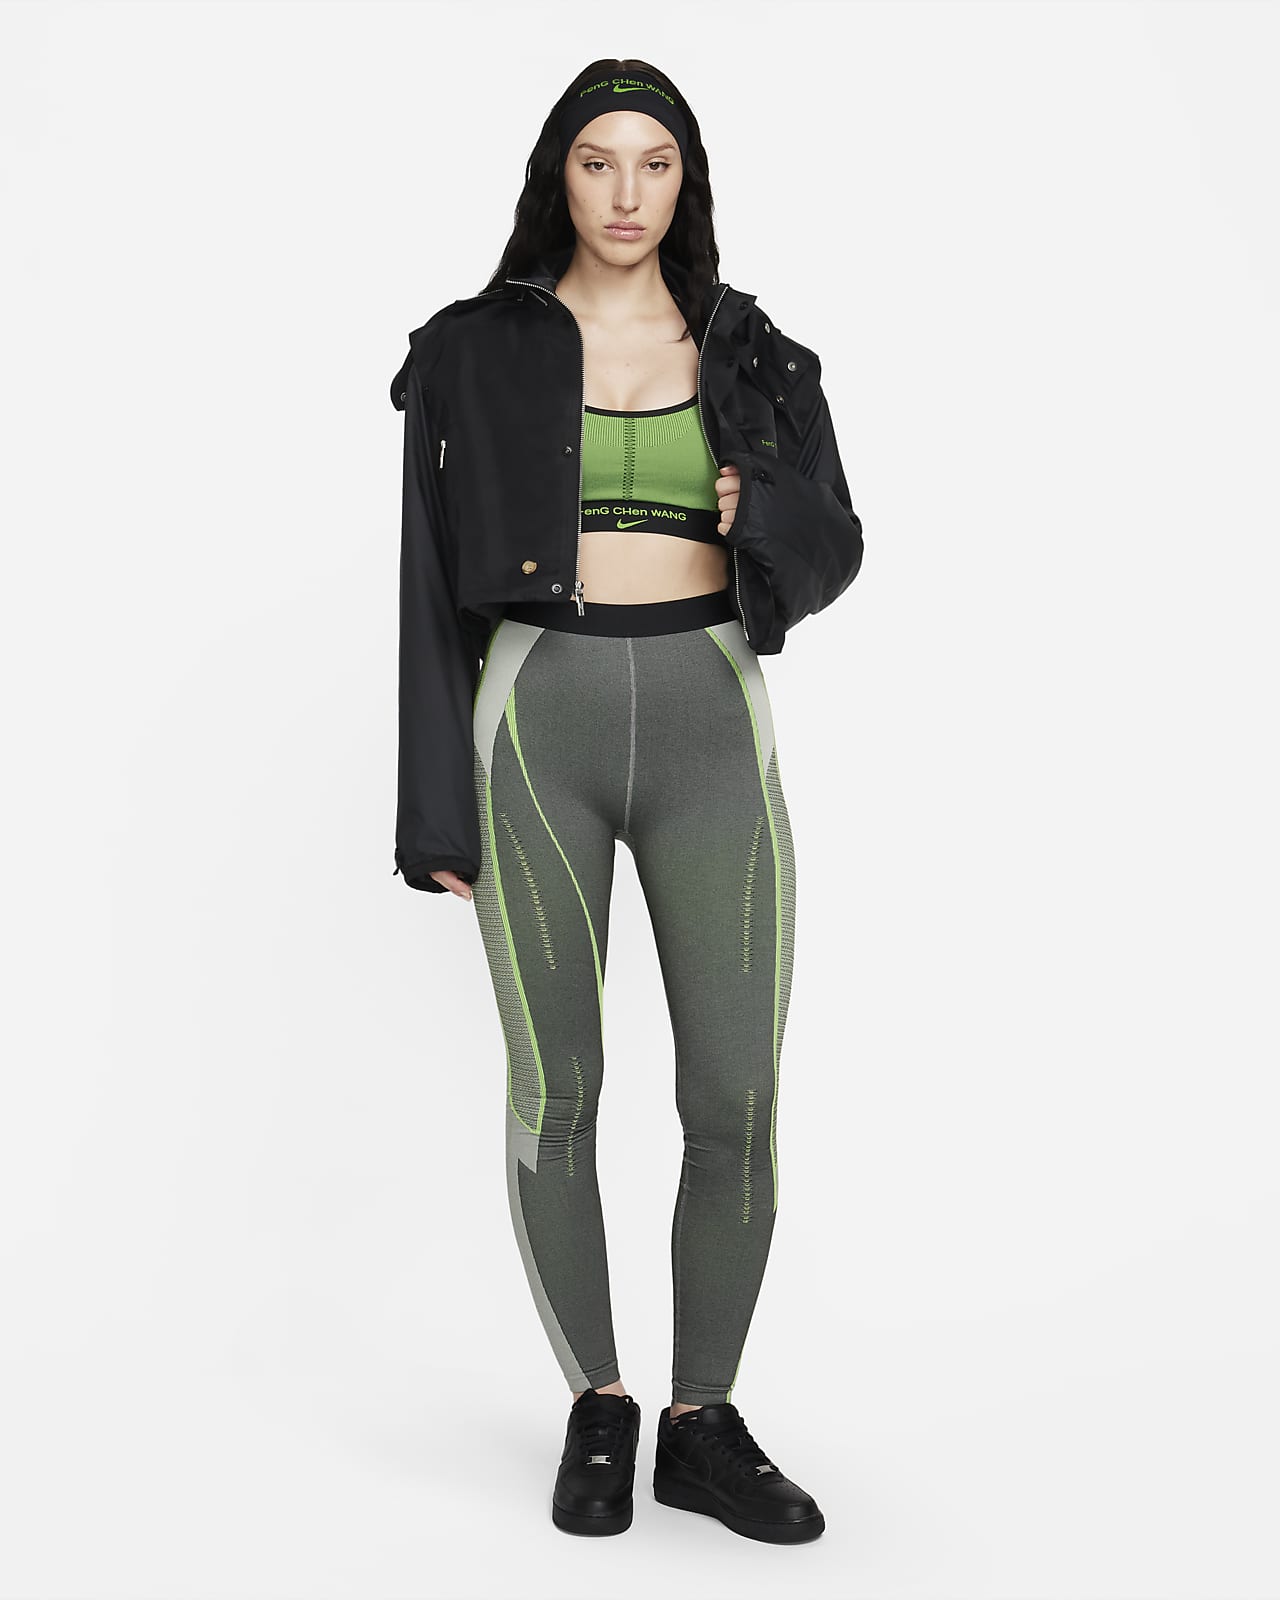 Nike x Feng Chen Wang Women's Pro Bra Black/Action Green